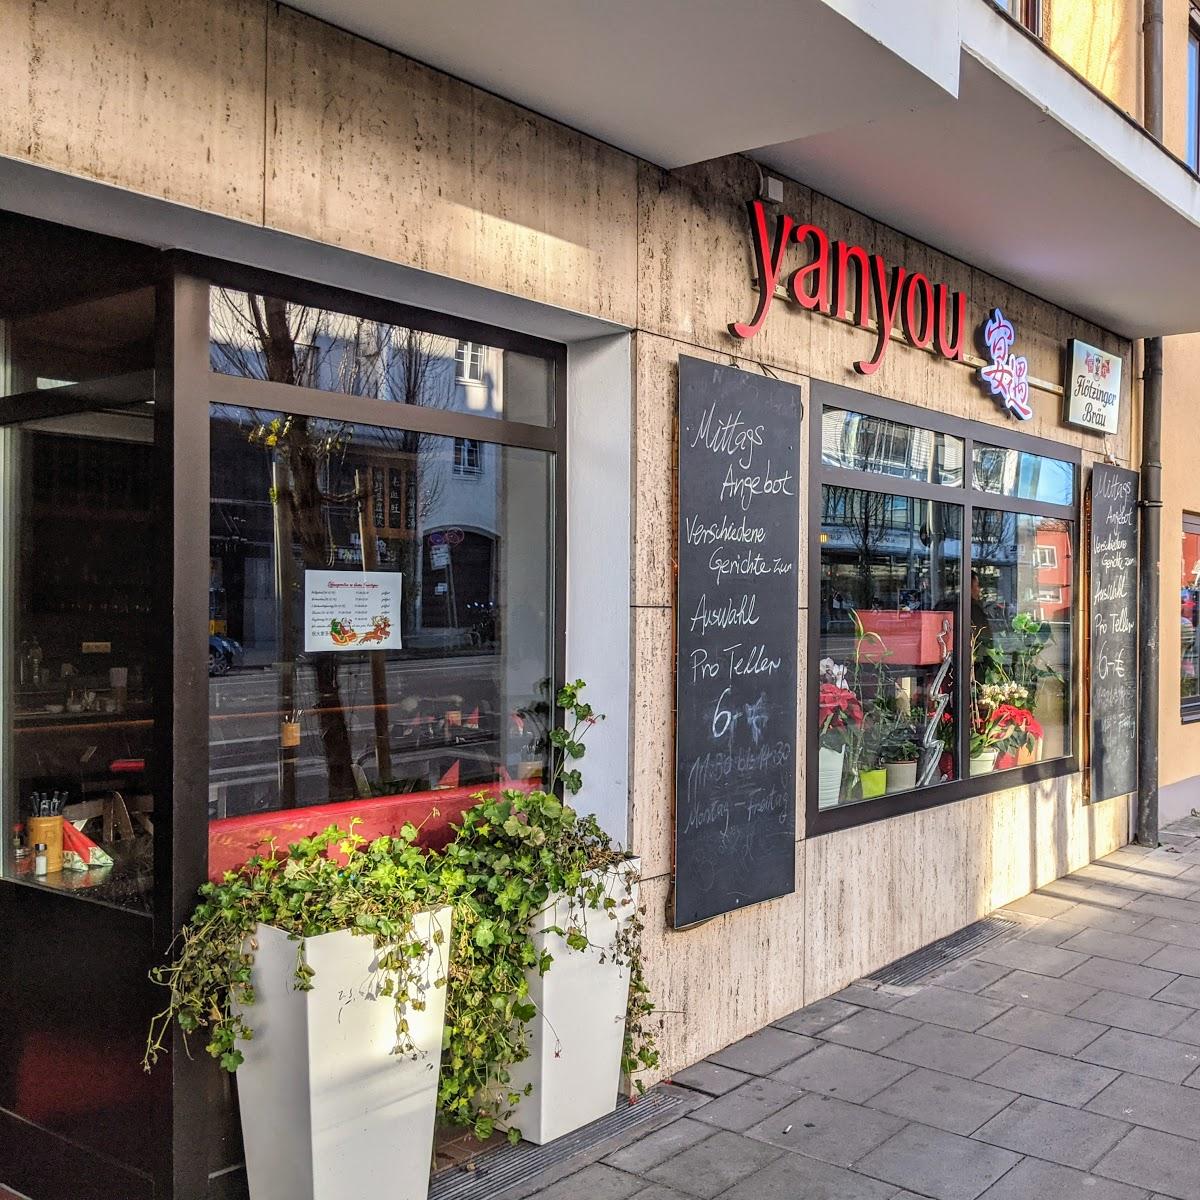 Restaurant "Yan You - Chinesisches Restaurant" in München